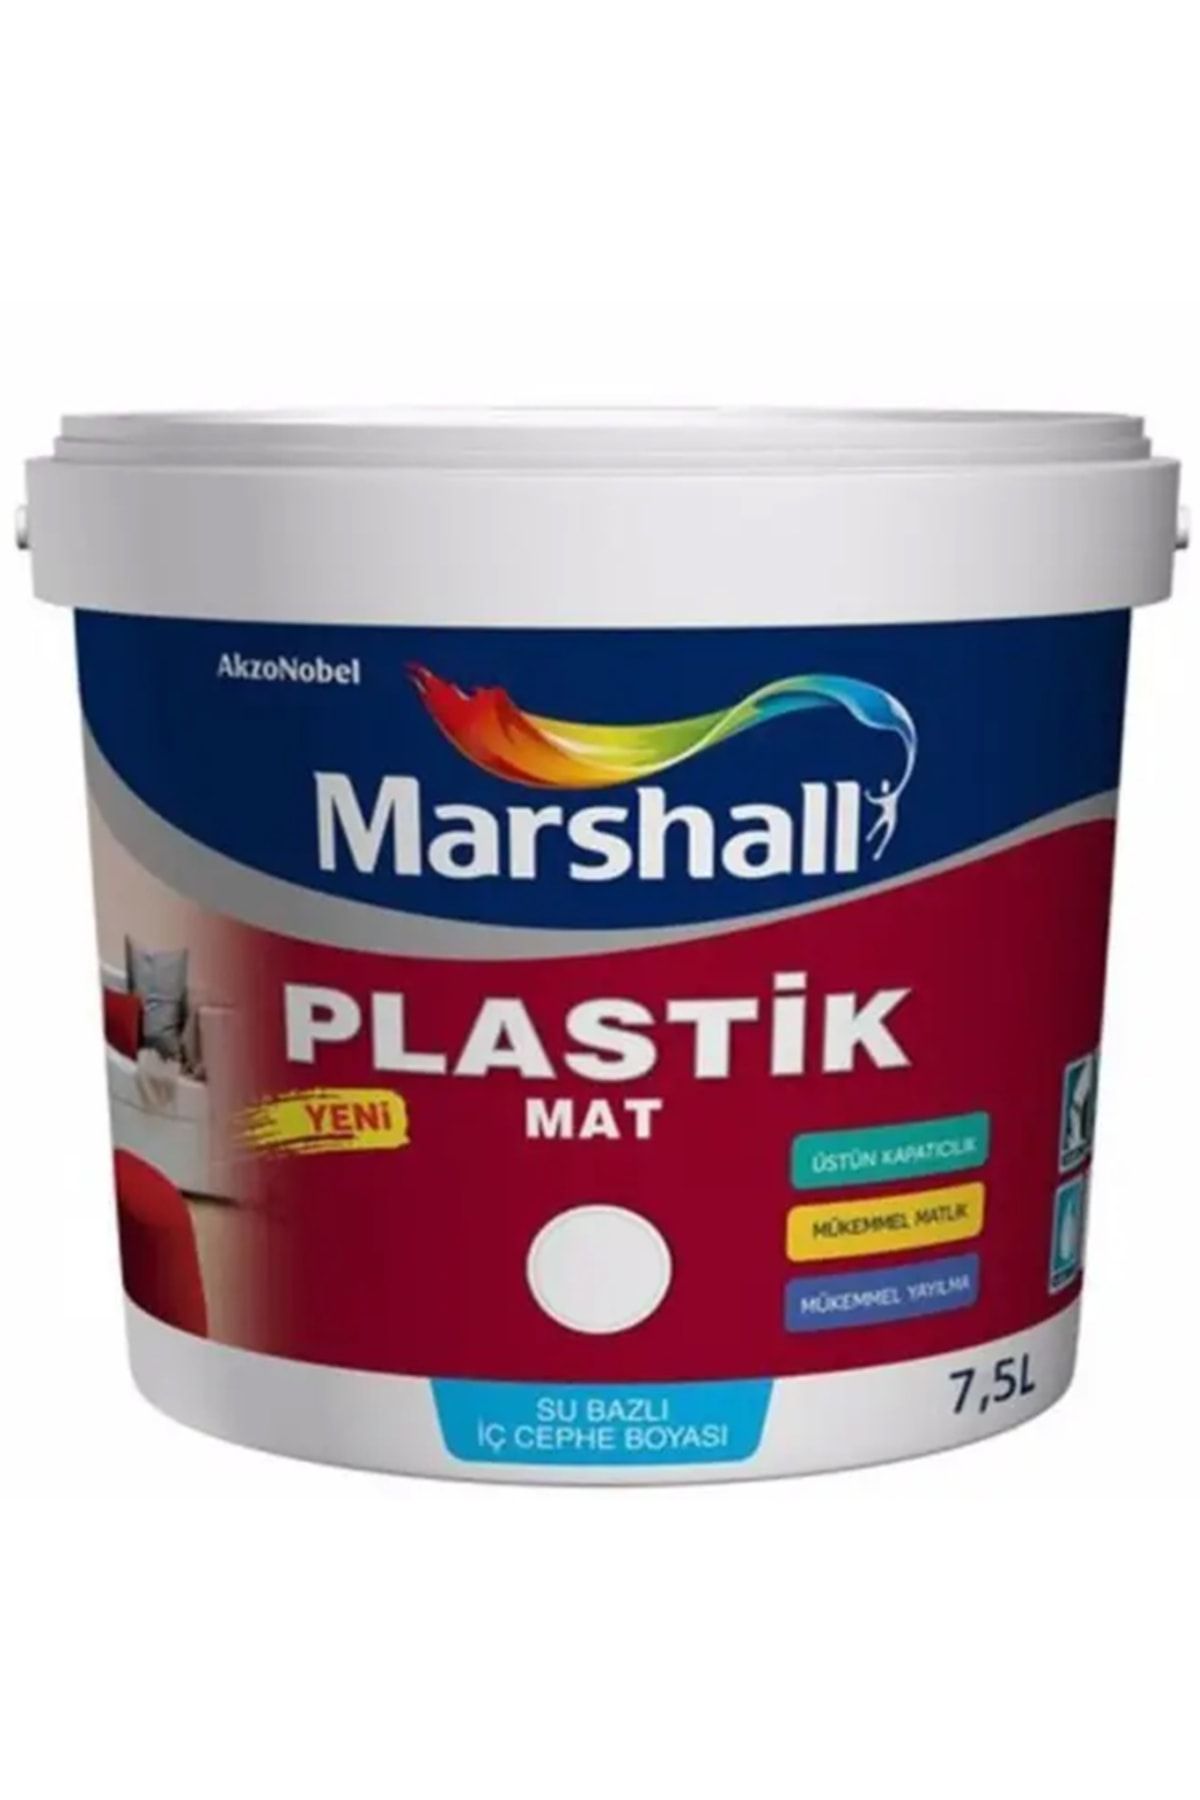 Marshall Plastik Mat Silinebilir Iç Cephe Boyası Afrika Menekşesi 7.5 lt 10 Kg